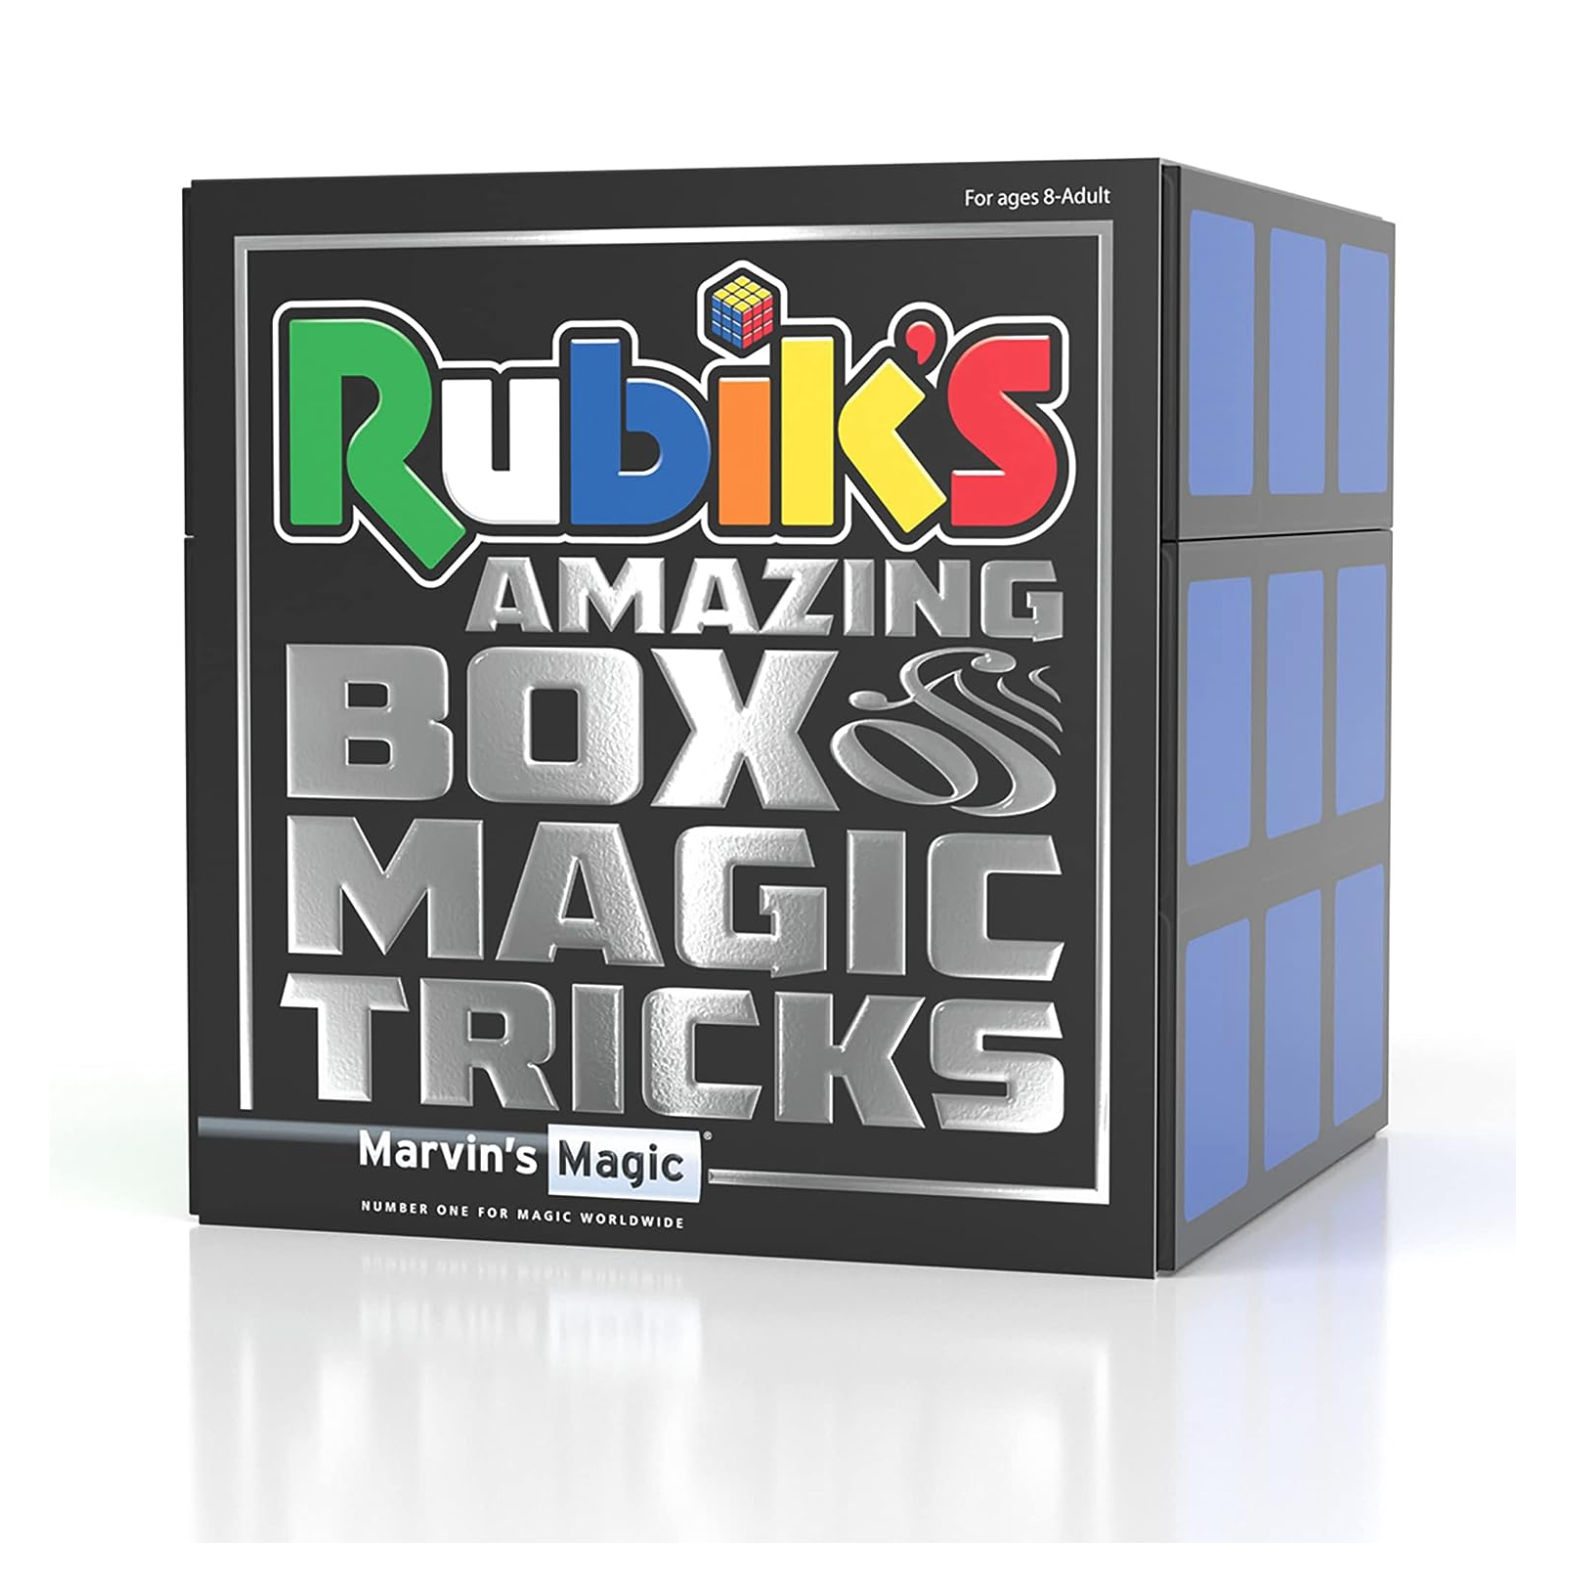 Rubik's Box of Magic Tricks